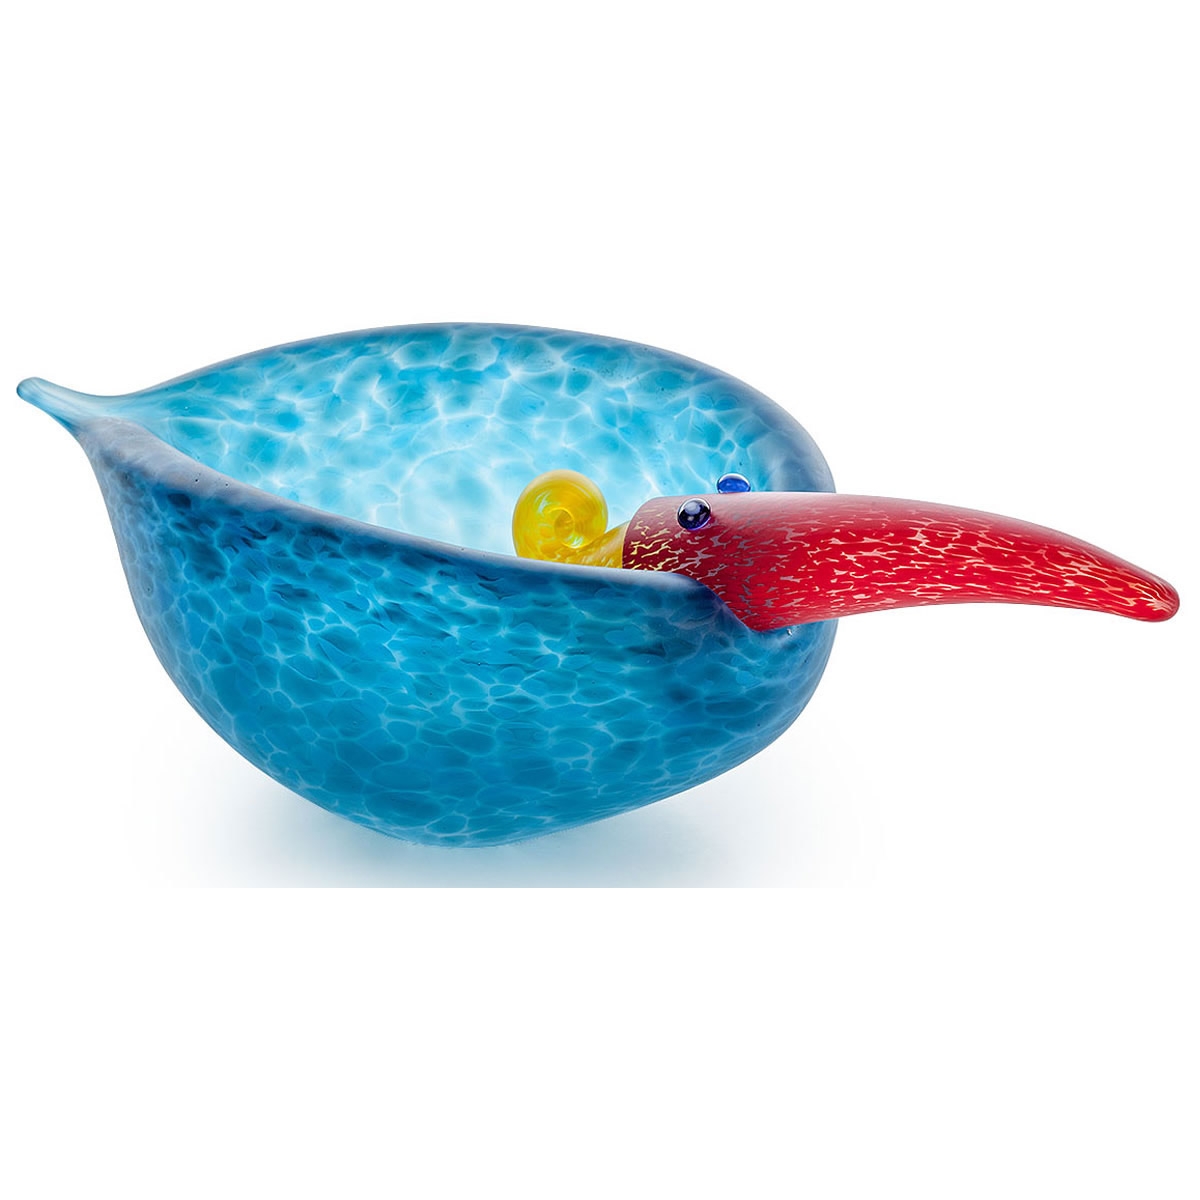 Tweedy Bird  Bowl Modern Glass Sculpture Amber